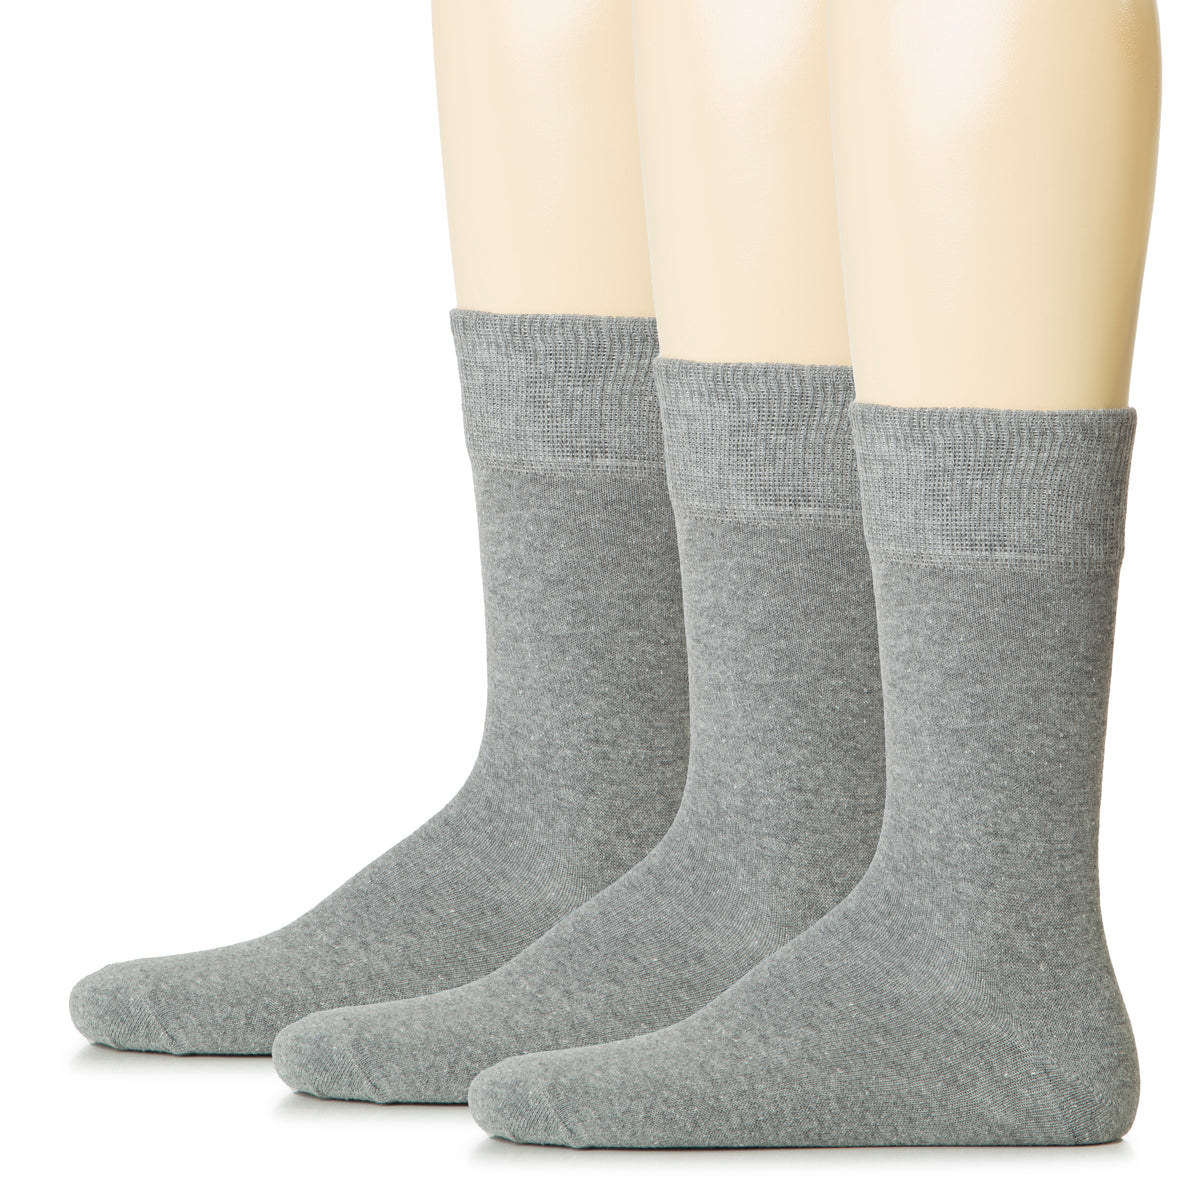 Hugh Ugoli Men Cotton Dress Socks XL / L / M / S Sizes, 3 Pairs | Shoe Size: 13-15 | Gray